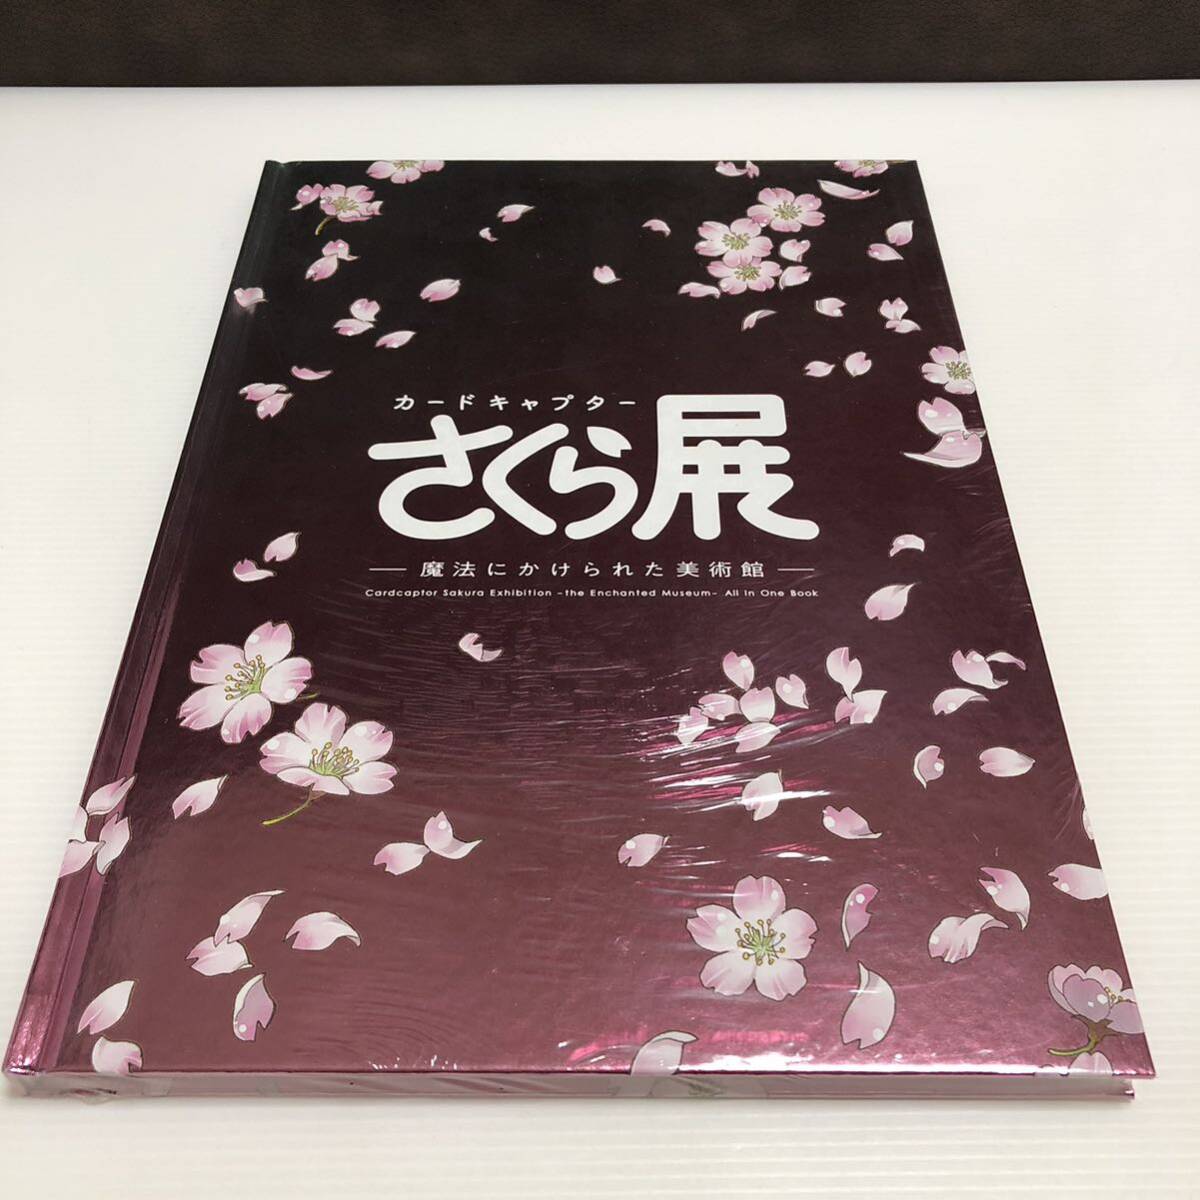 m278-0365-8 [ нераспечатанный товар ] Cardcaptor Sakura выставка магия ...... картинная галерея все в одном книжка 